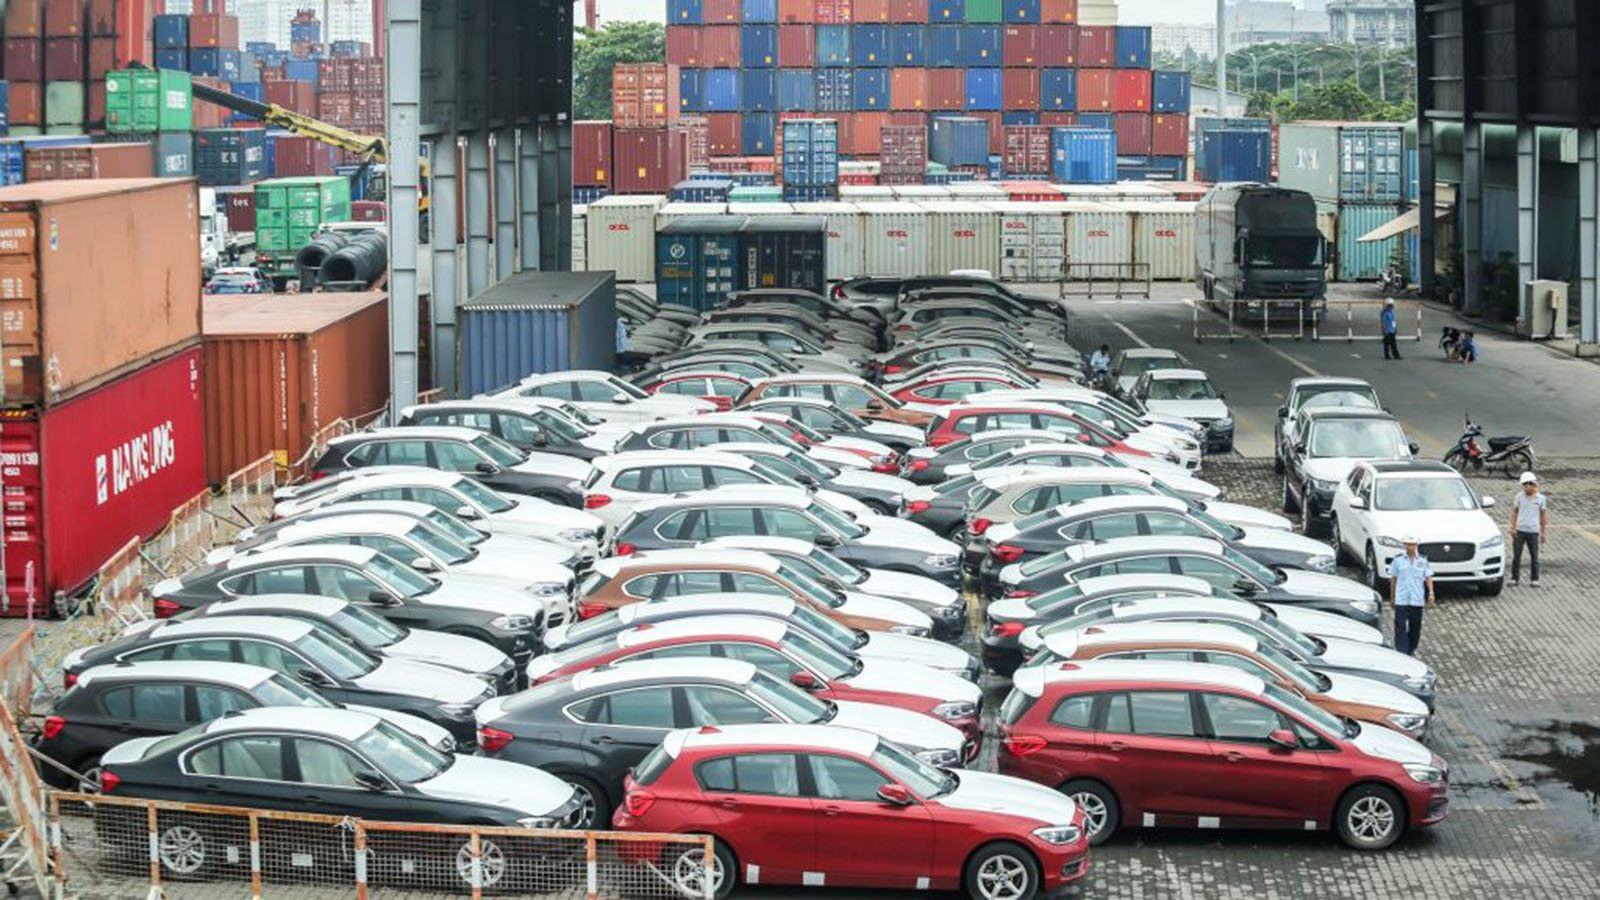 Trong một tháng, Việt Nam nhập khẩu hơn 12.000 chiếc ô tô, chủ yếu 9 chỗ trở xuống, một dòng xe không nhập chiếc nào